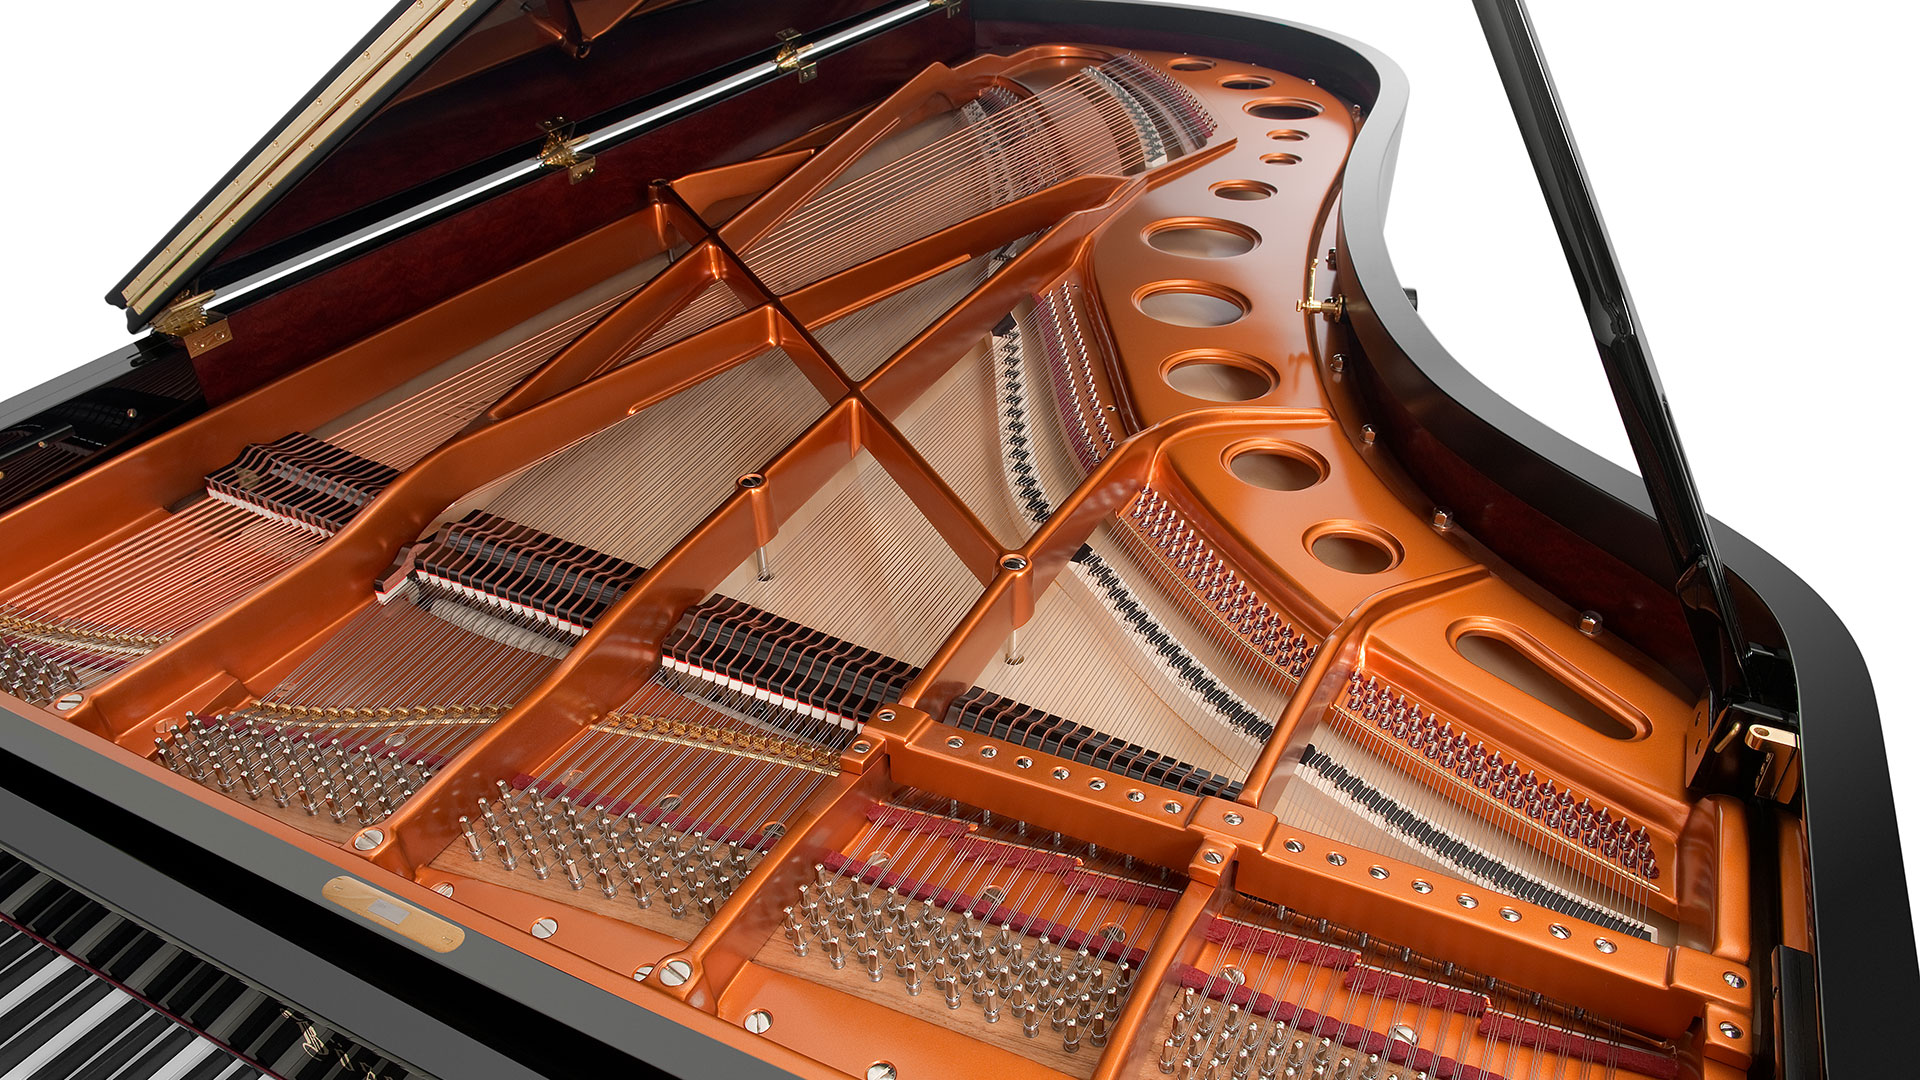 Bosendorfer piano Model 280-vc grand piano